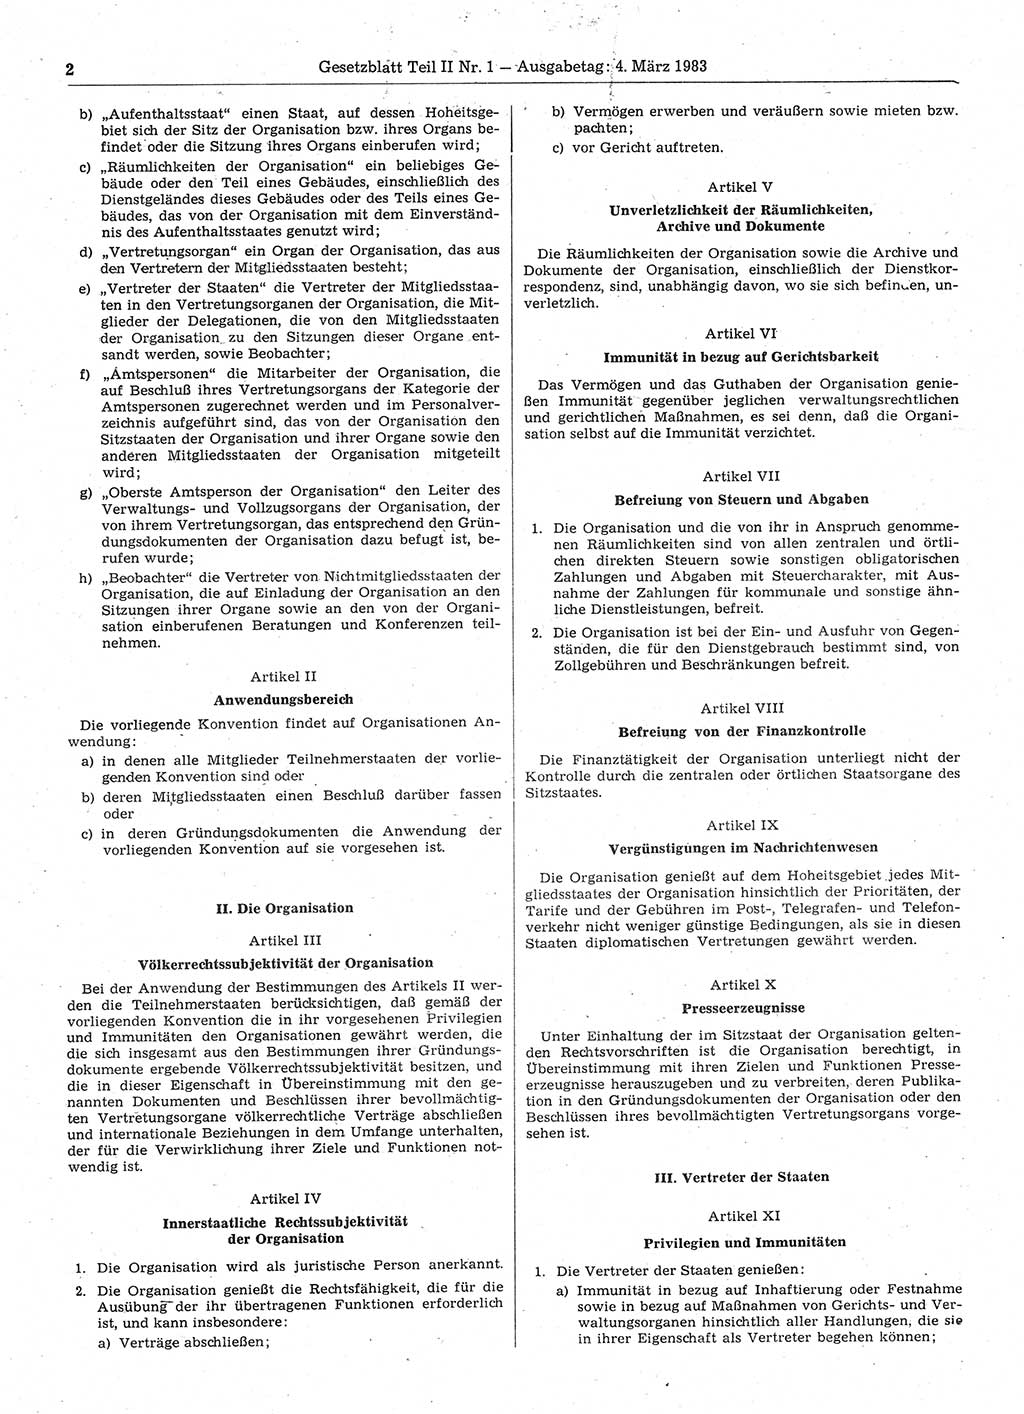 Gesetzblatt (GBl.) der Deutschen Demokratischen Republik (DDR) Teil ⅠⅠ 1983, Seite 2 (GBl. DDR ⅠⅠ 1983, S. 2)